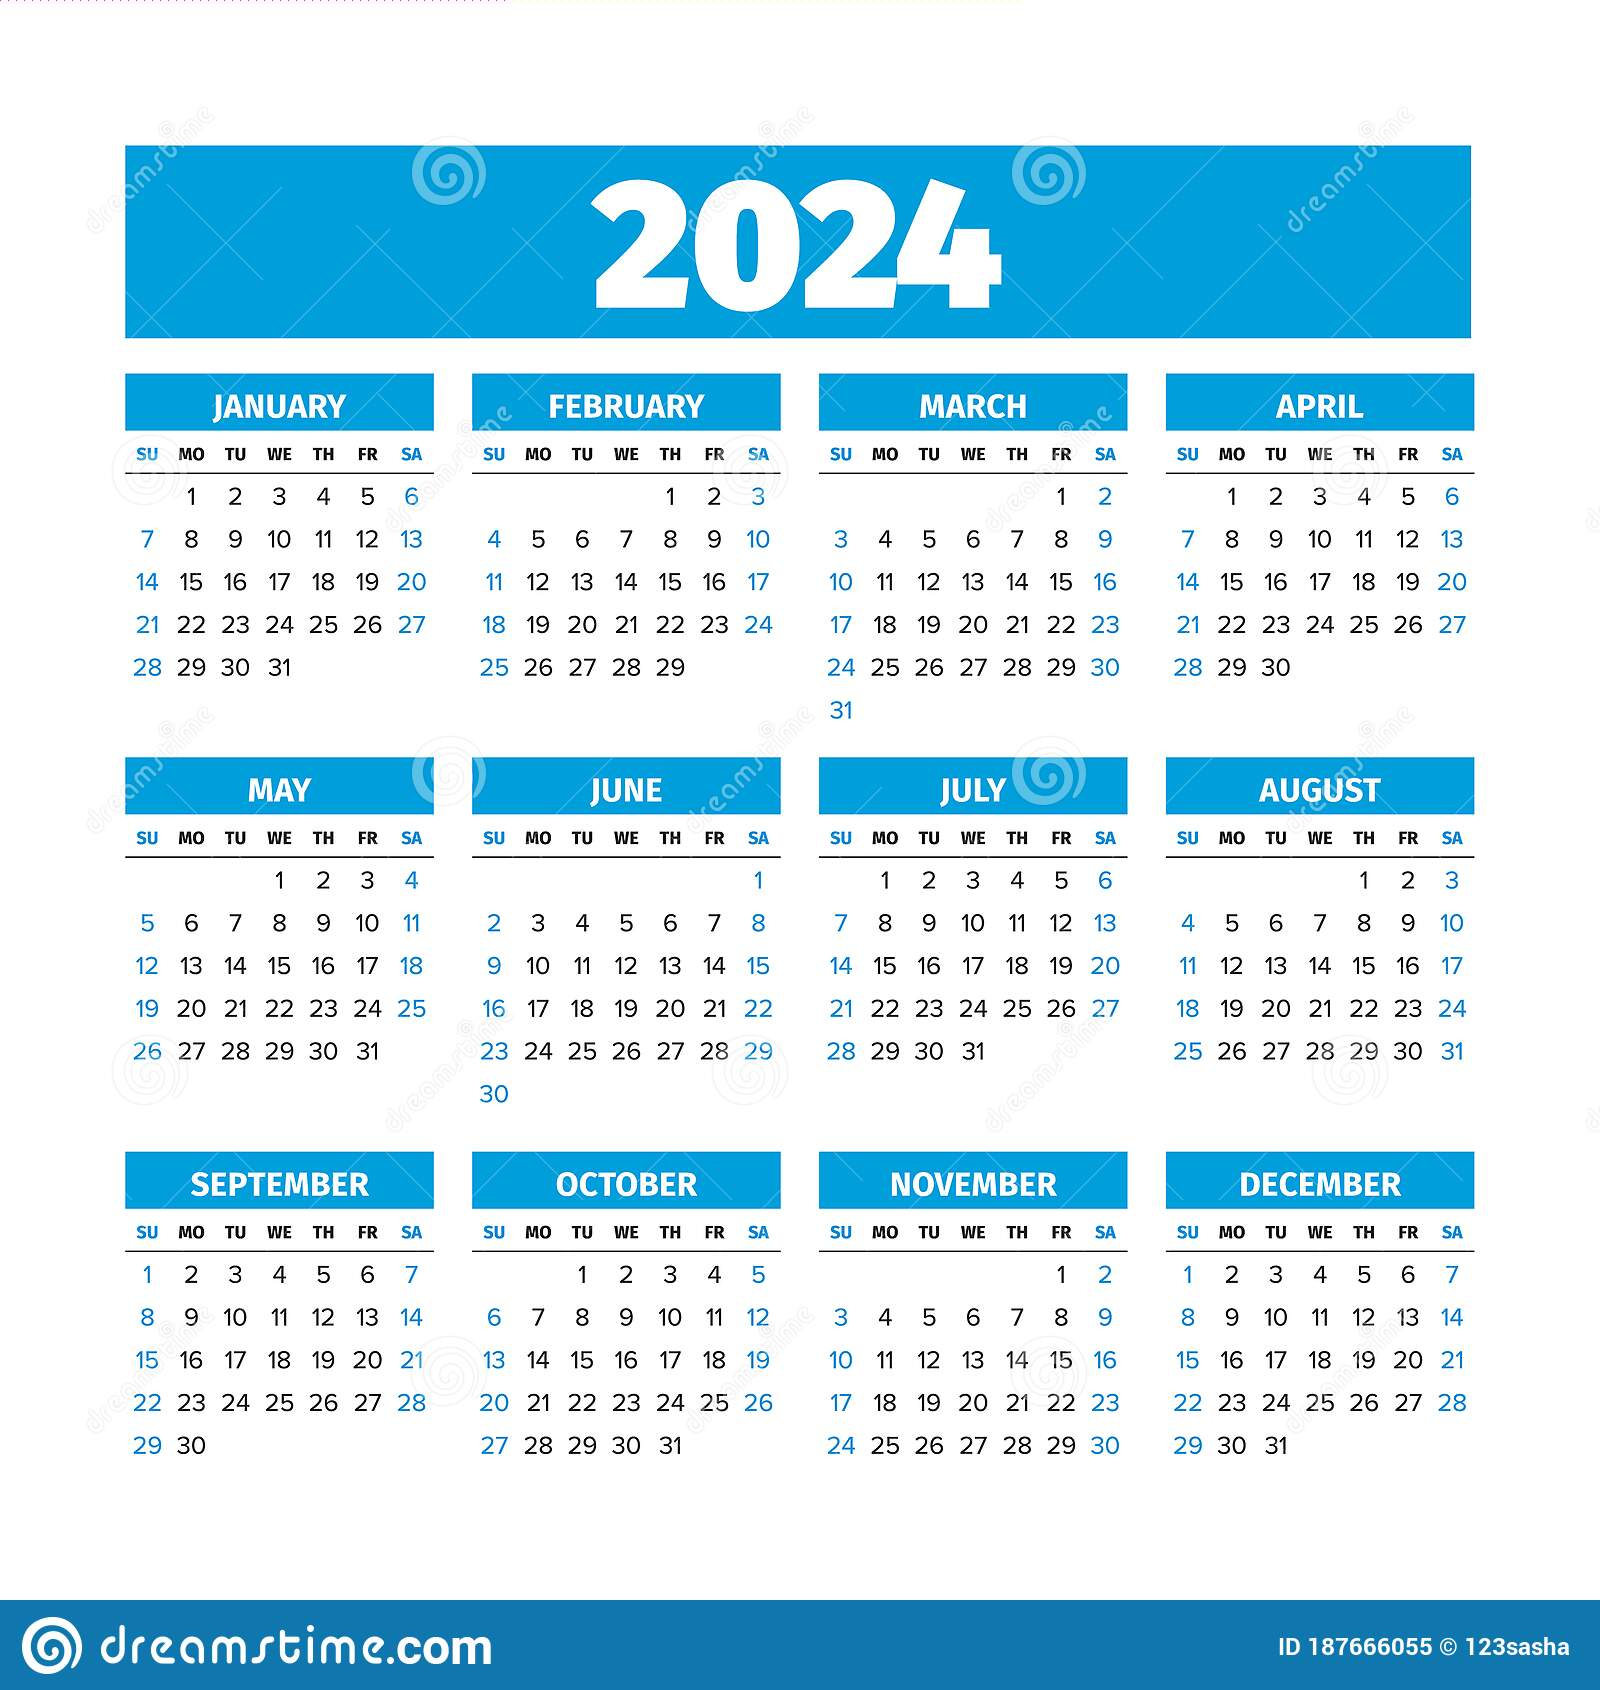 2024 Calendar With Week Numbers 2024 Calendar Printable